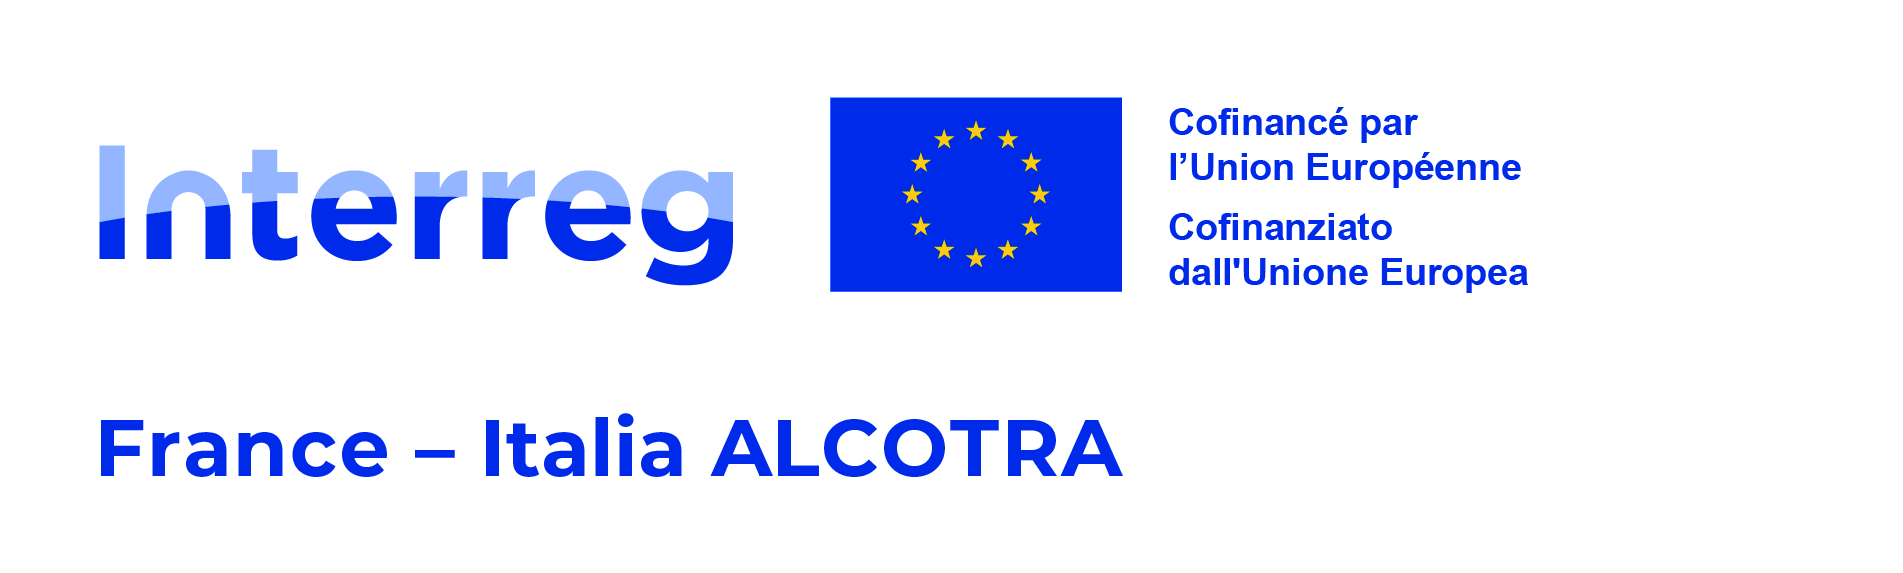 Logo Alcotra 2021-2027 français - italien